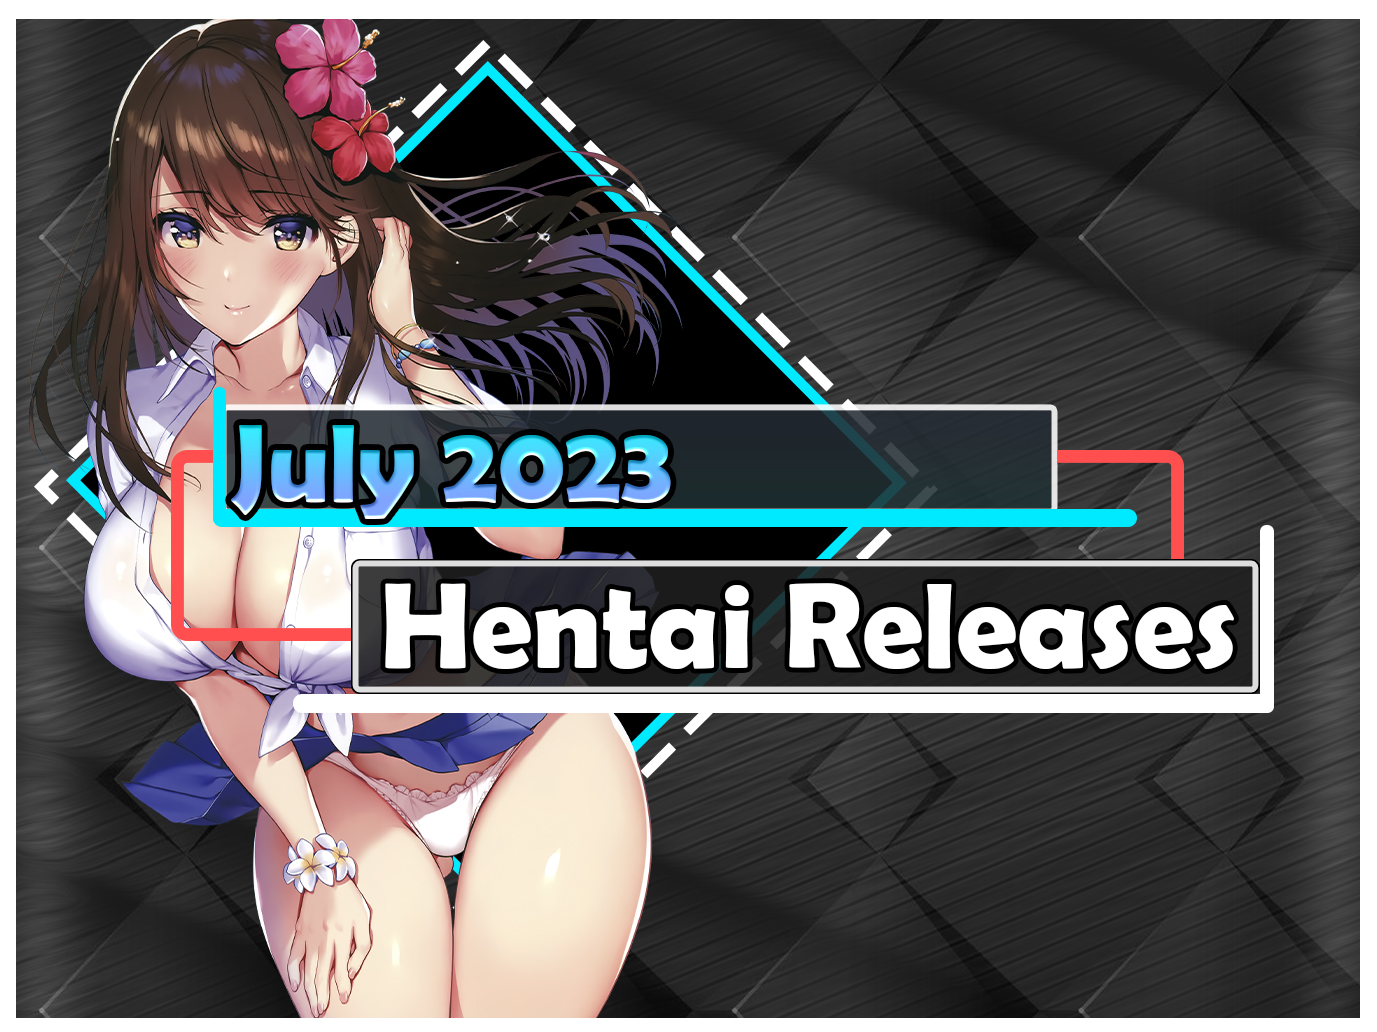 July hentai